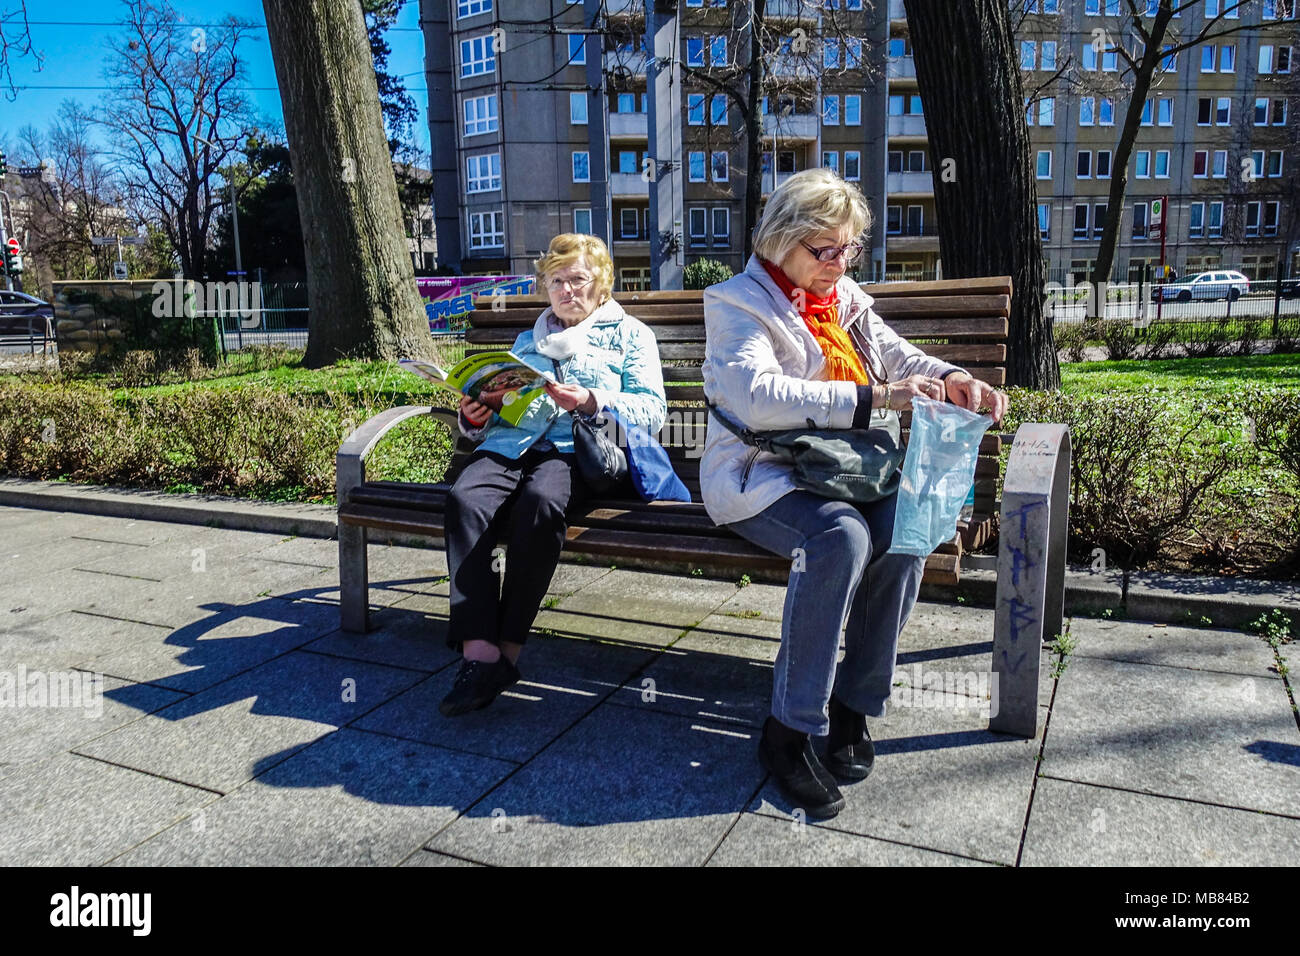 Banco de ancianos, dos mujeres mayores en un banco de parque. Neustadt, Dresden, Alemania Banco de mujeres de edad Alemania Personas mayores Población envejecida Foto de stock